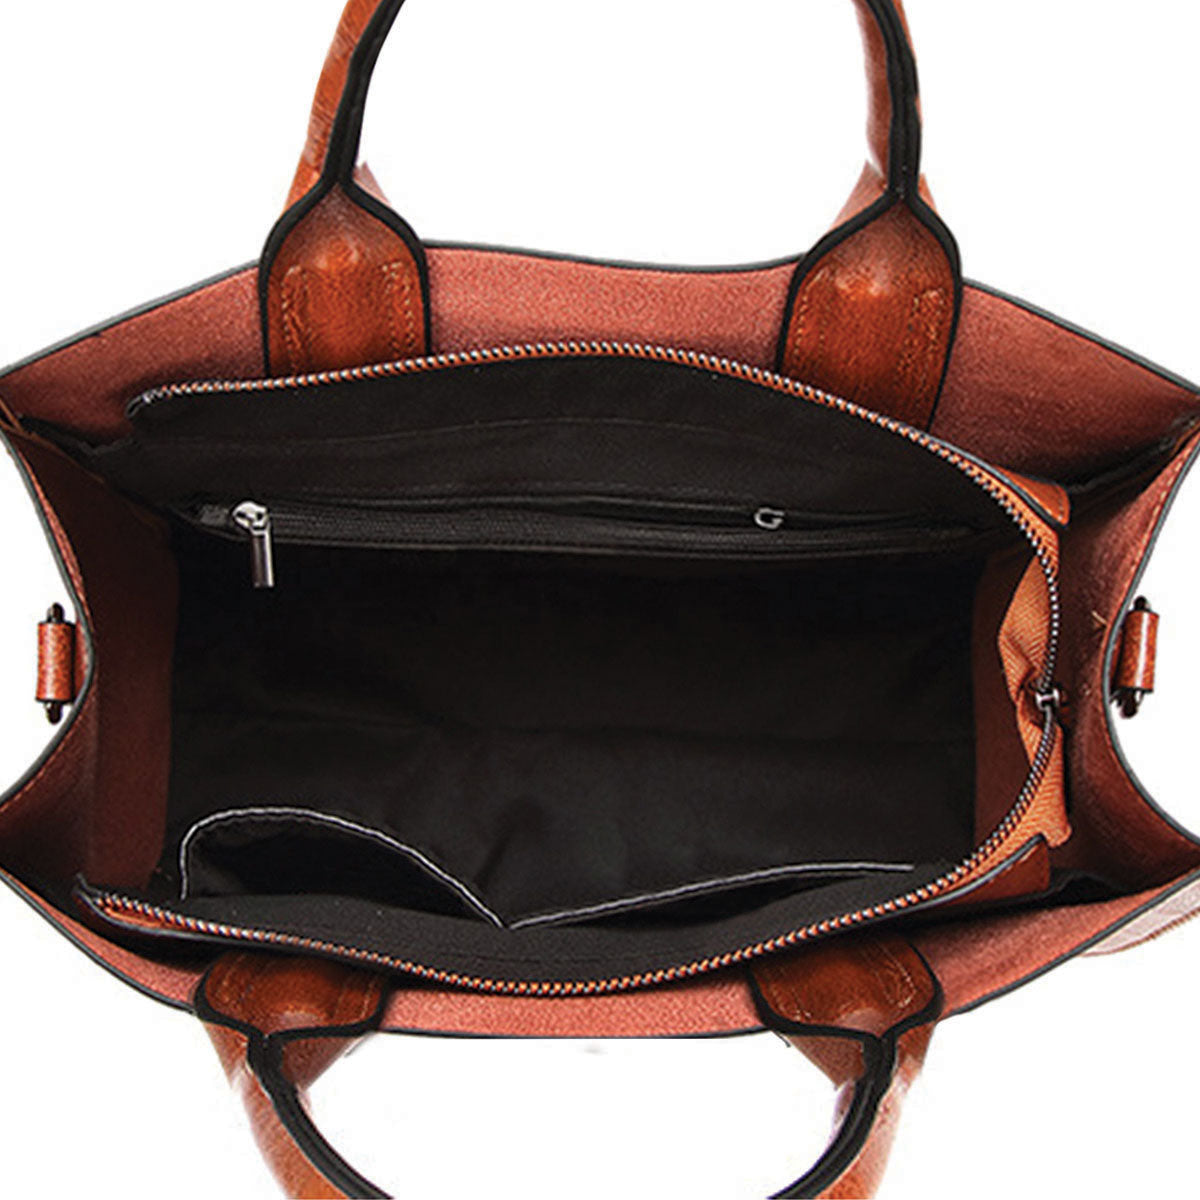 Ihr bester Begleiter – Basenji Luxus-Handtasche V1